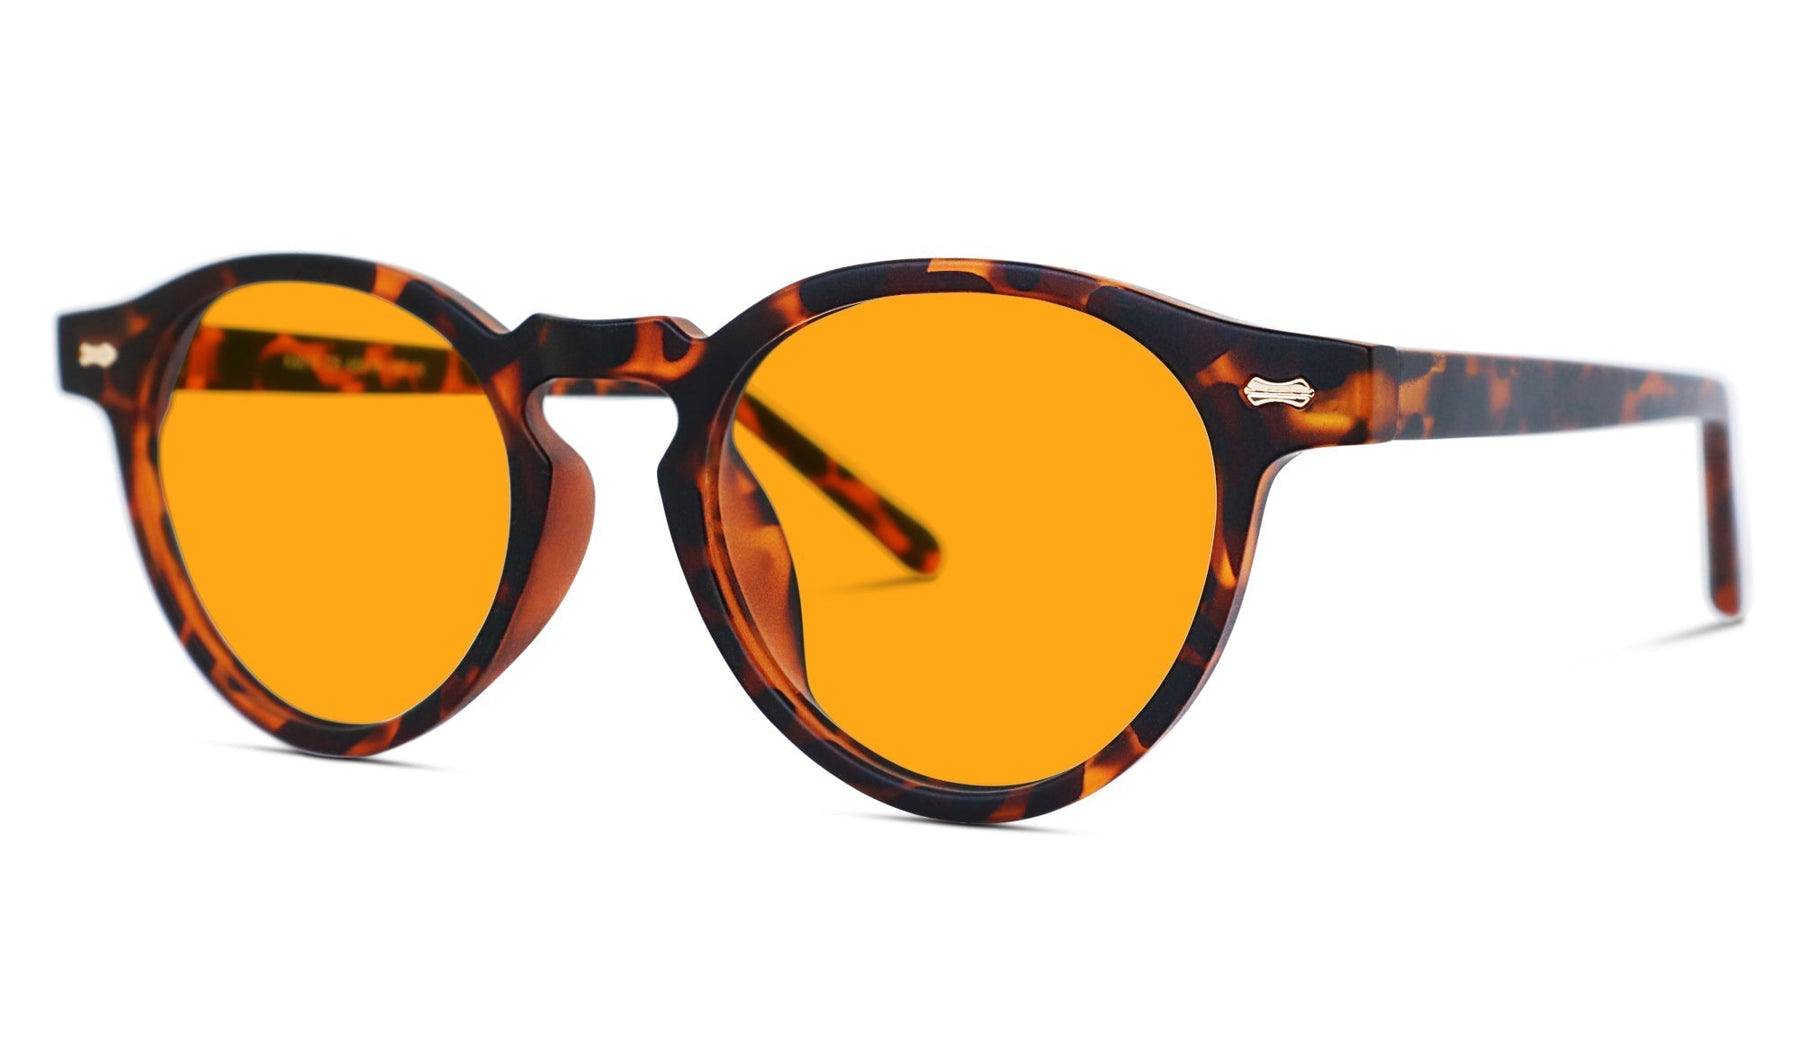 SunDown Oscar Blue Blocking Glasses - Tortoise - Readers